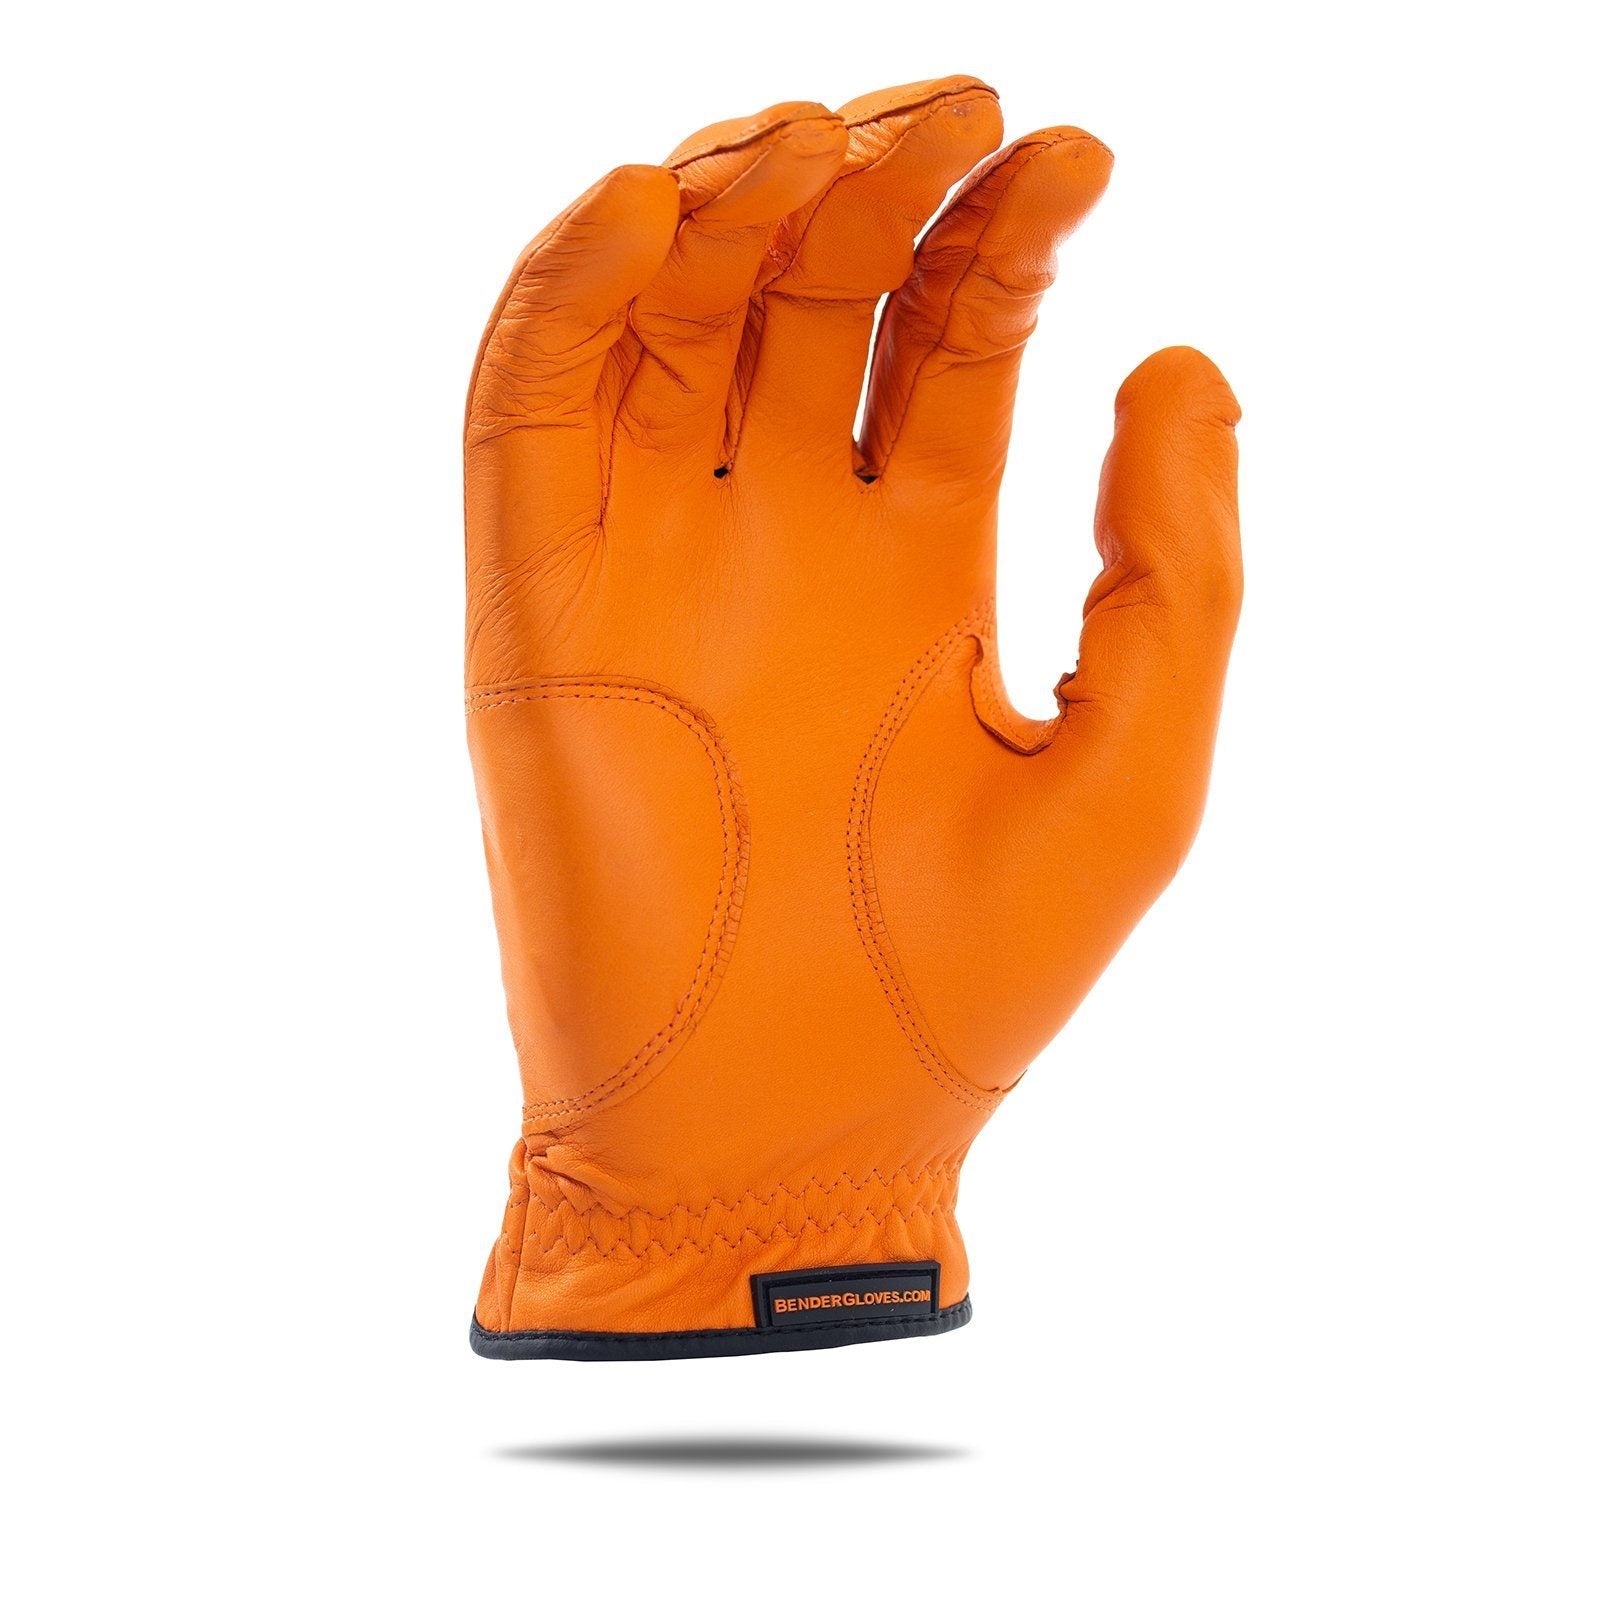 Orange Elite Tour Golf Glove - Bender Gloves